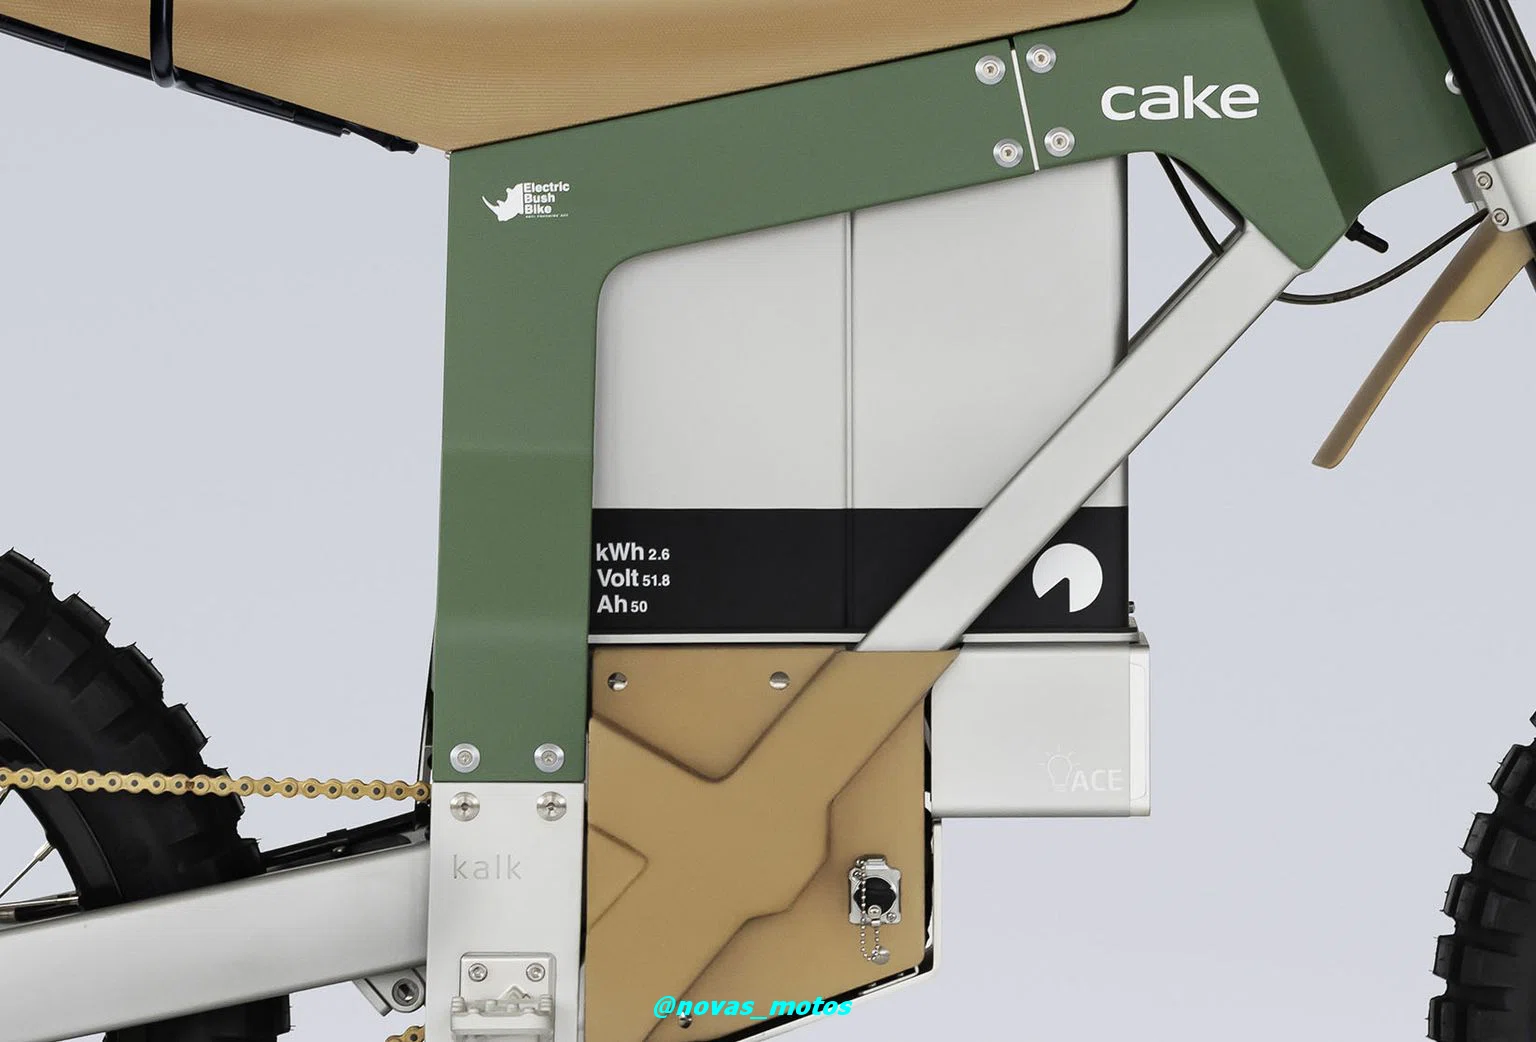 bateria-cake-kalk-ap Conheça a Cake Kalk – Uma moto elétrica que parece de pel, mas pode te surpreender!